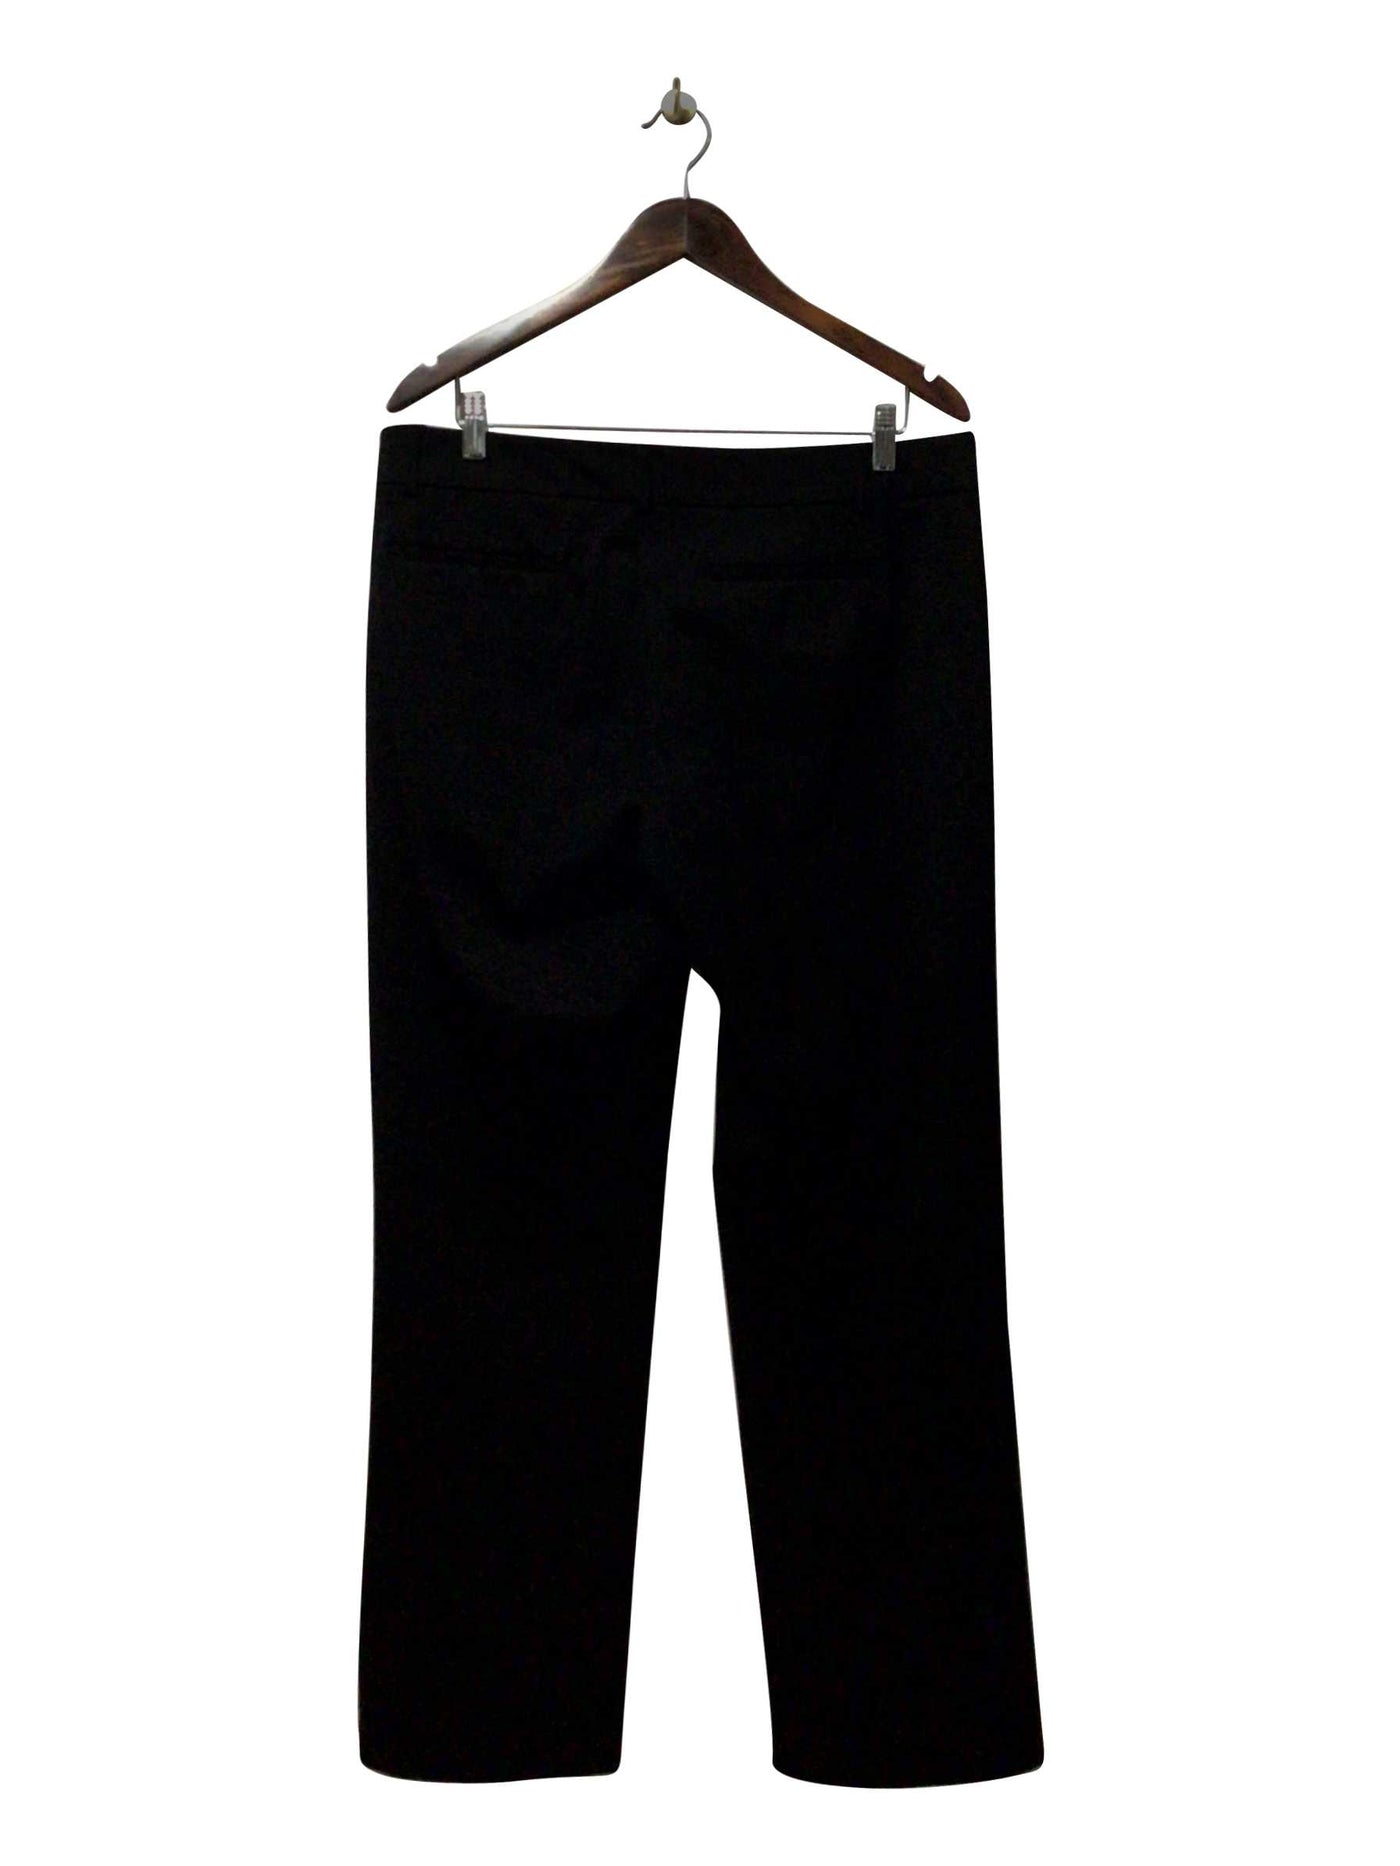 HILARY RADLEY Regular fit Pant in Black  -  12X30  9.59 Koop